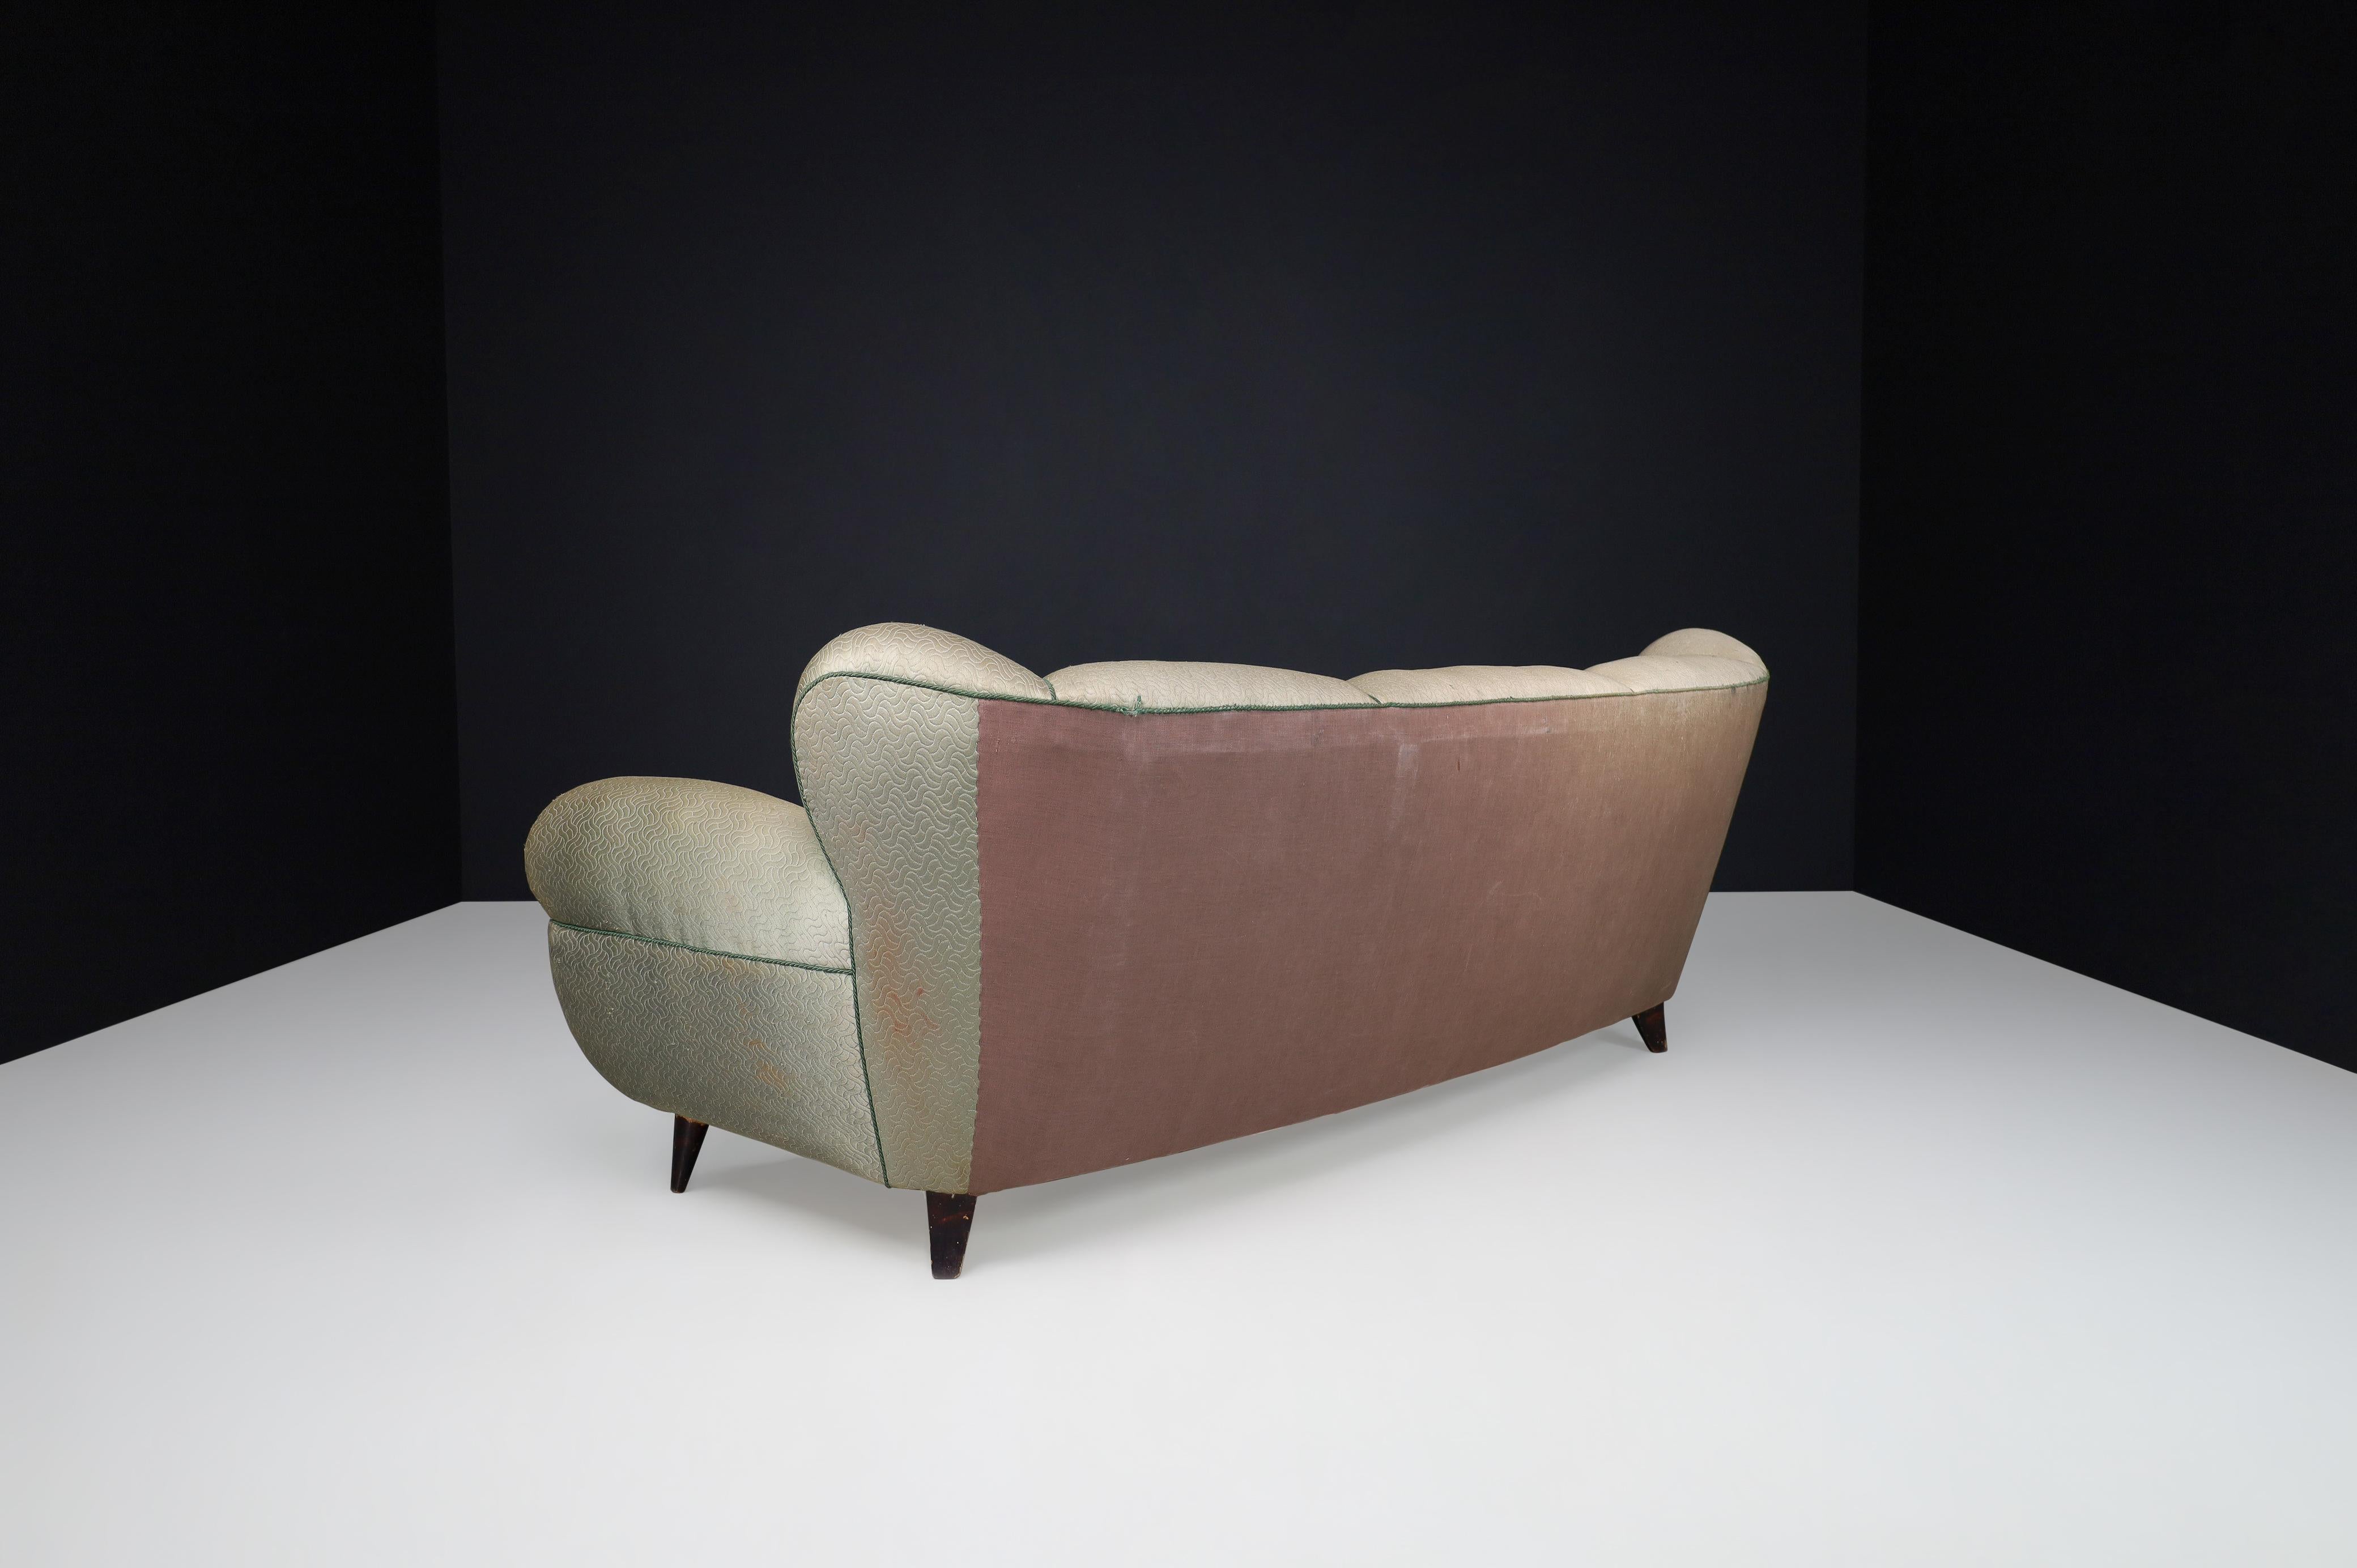 Guglielmo Ulrich Art Deco Sofa in Original Fabric, Italy 1930s For Sale 4